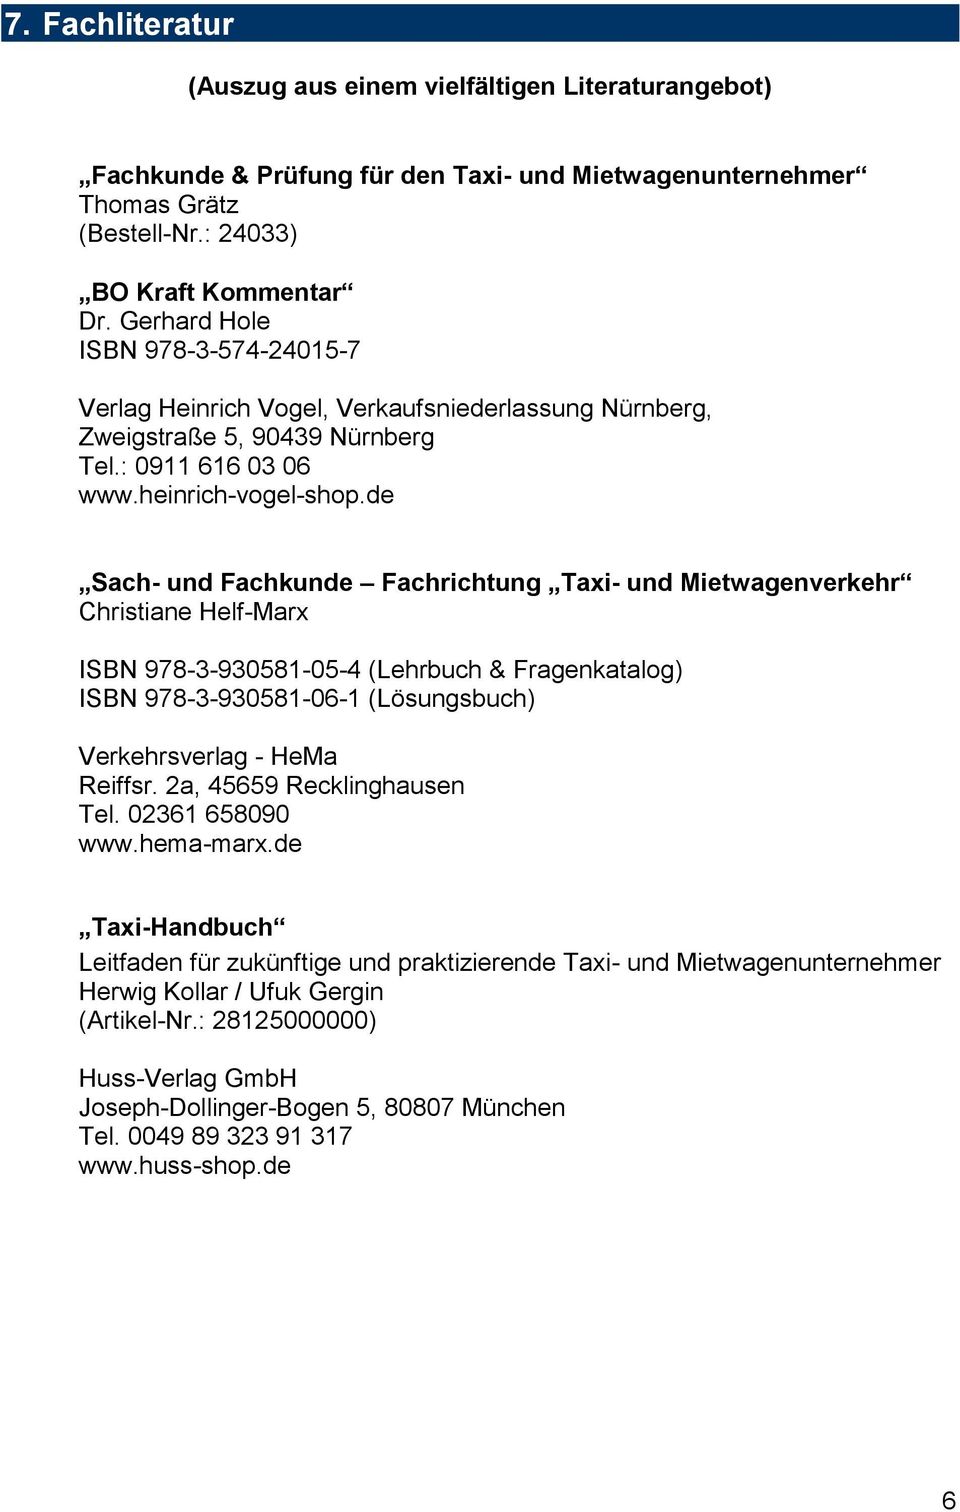 de Sach- und Fachkunde Fachrichtung Taxi- und Mietwagenverkehr Christiane Helf-Marx ISBN 978-3-930581-05-4 (Lehrbuch & Fragenkatalog) ISBN 978-3-930581-06-1 (Lösungsbuch) Verkehrsverlag - HeMa